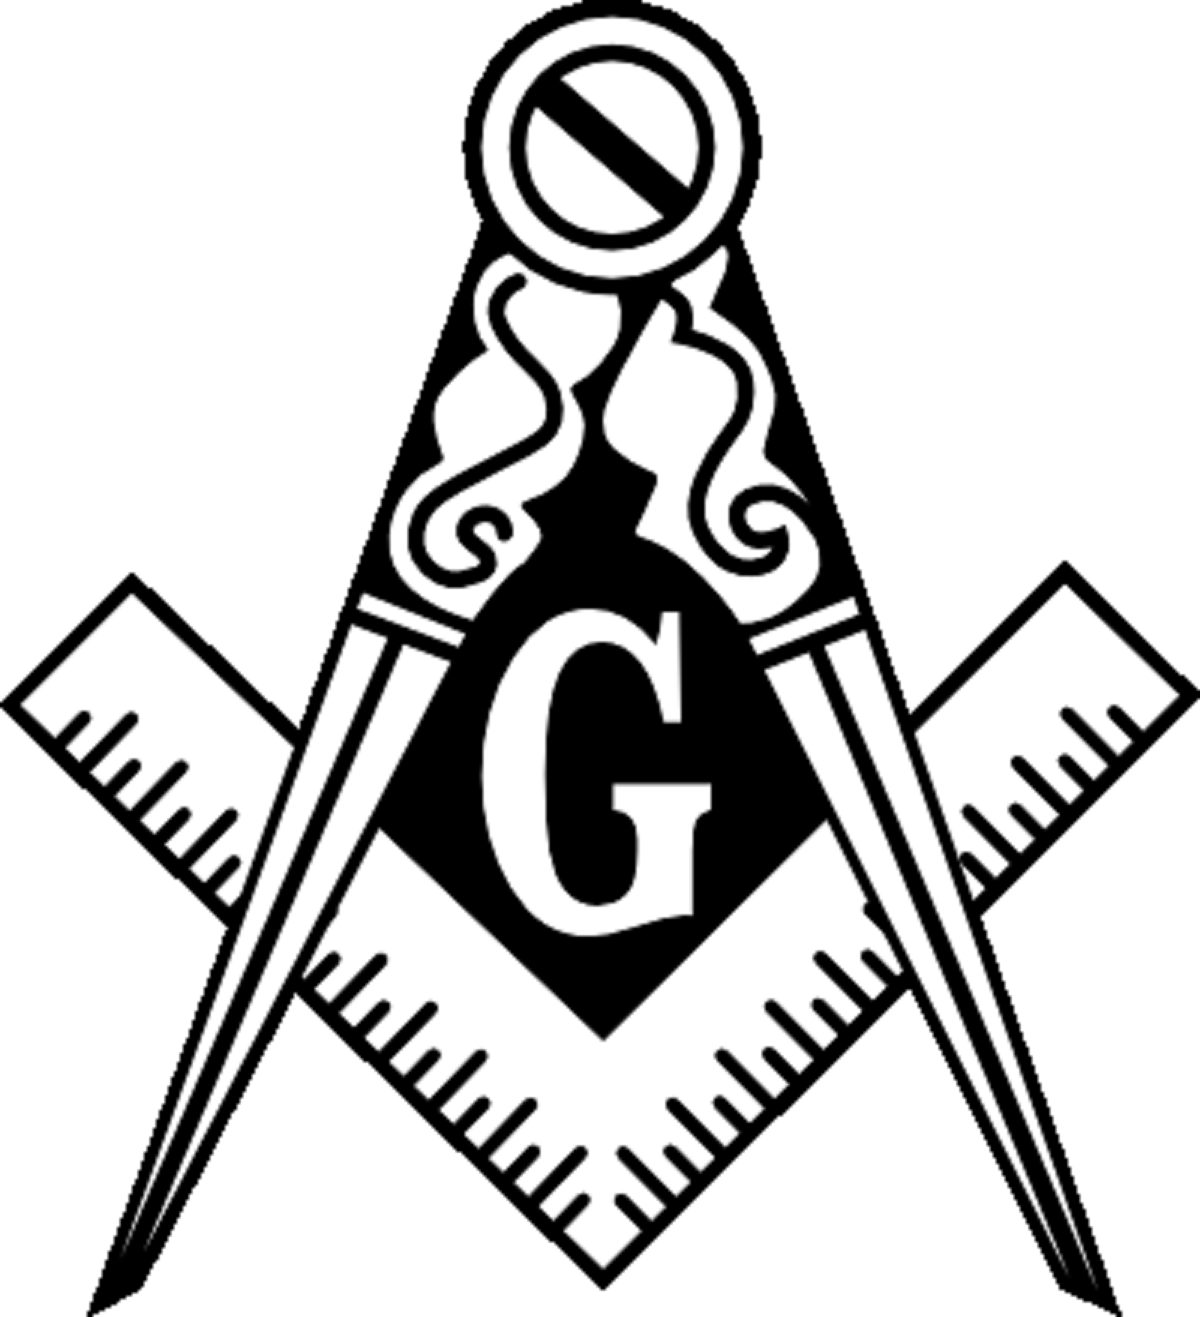 About Freemasonry | Victory Lodge #